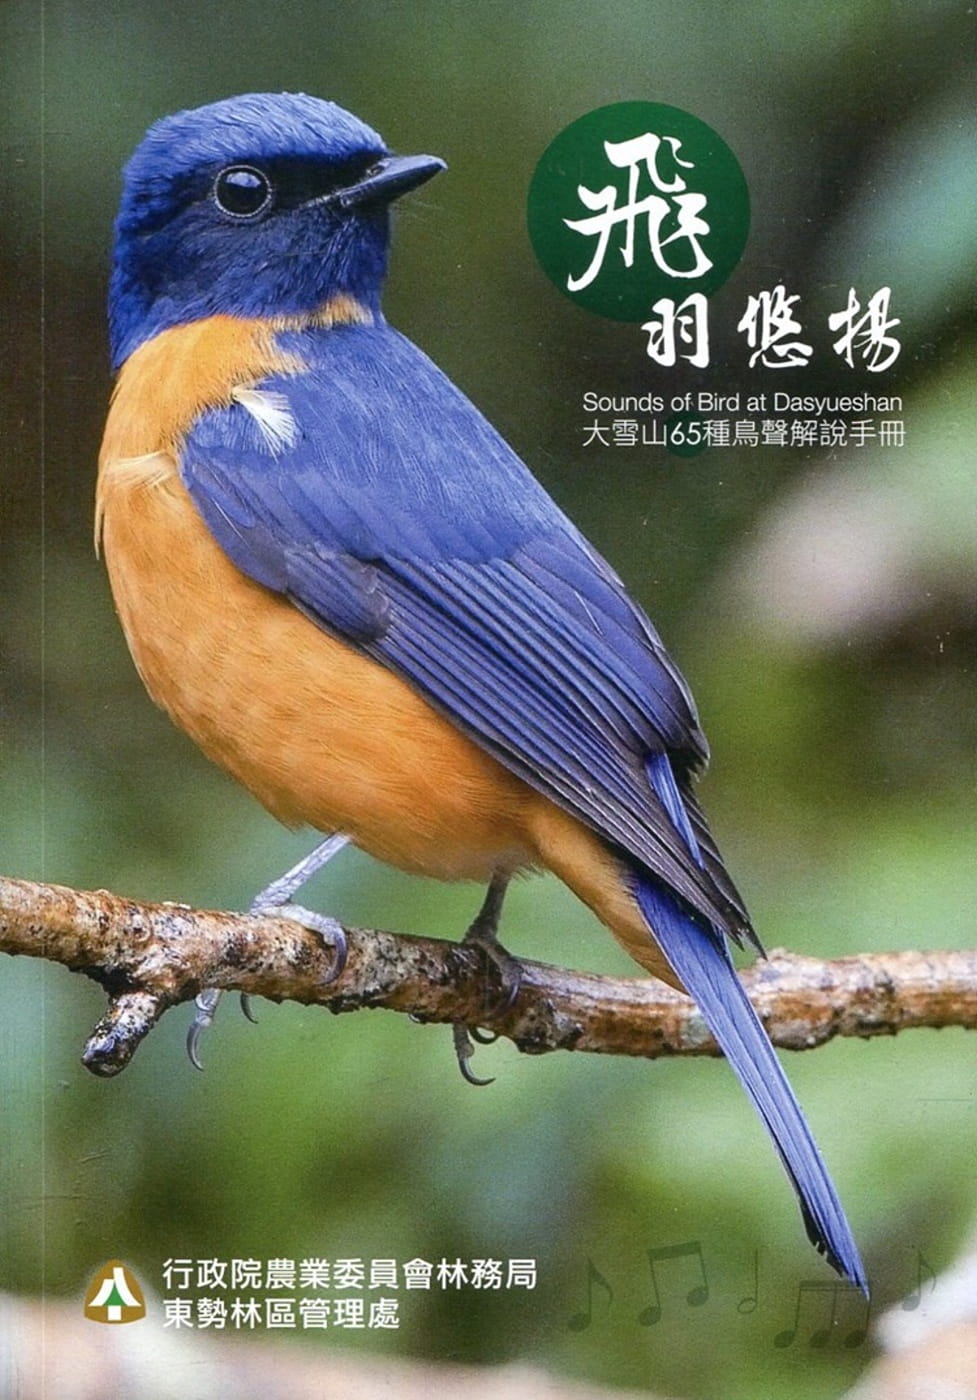 飛羽悠揚∼大雪山65種鳥聲解說手冊